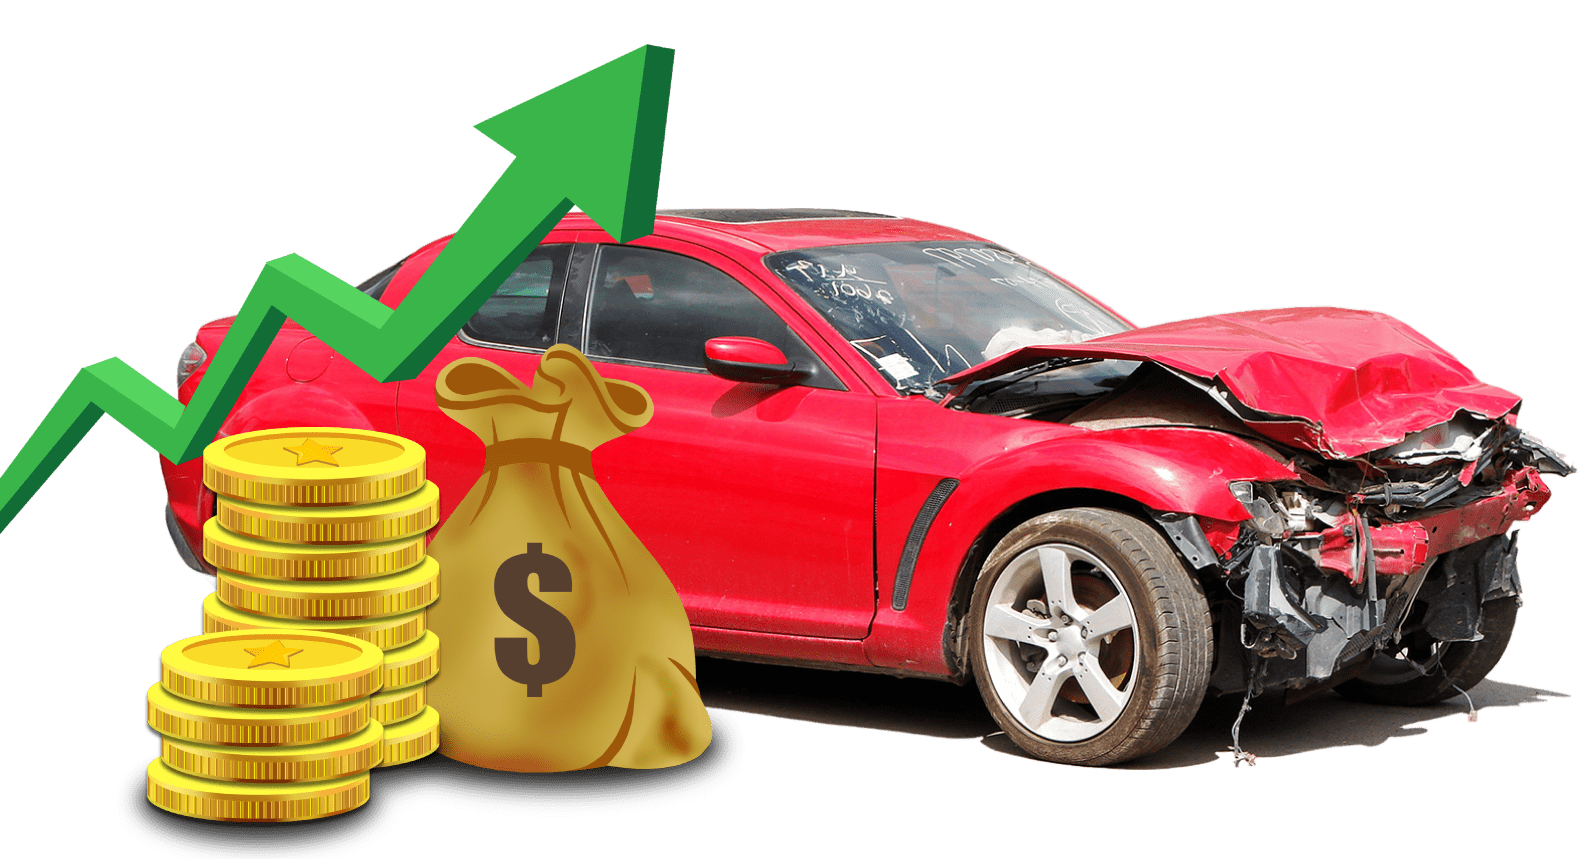  Cash for scrap cars Thagoona 